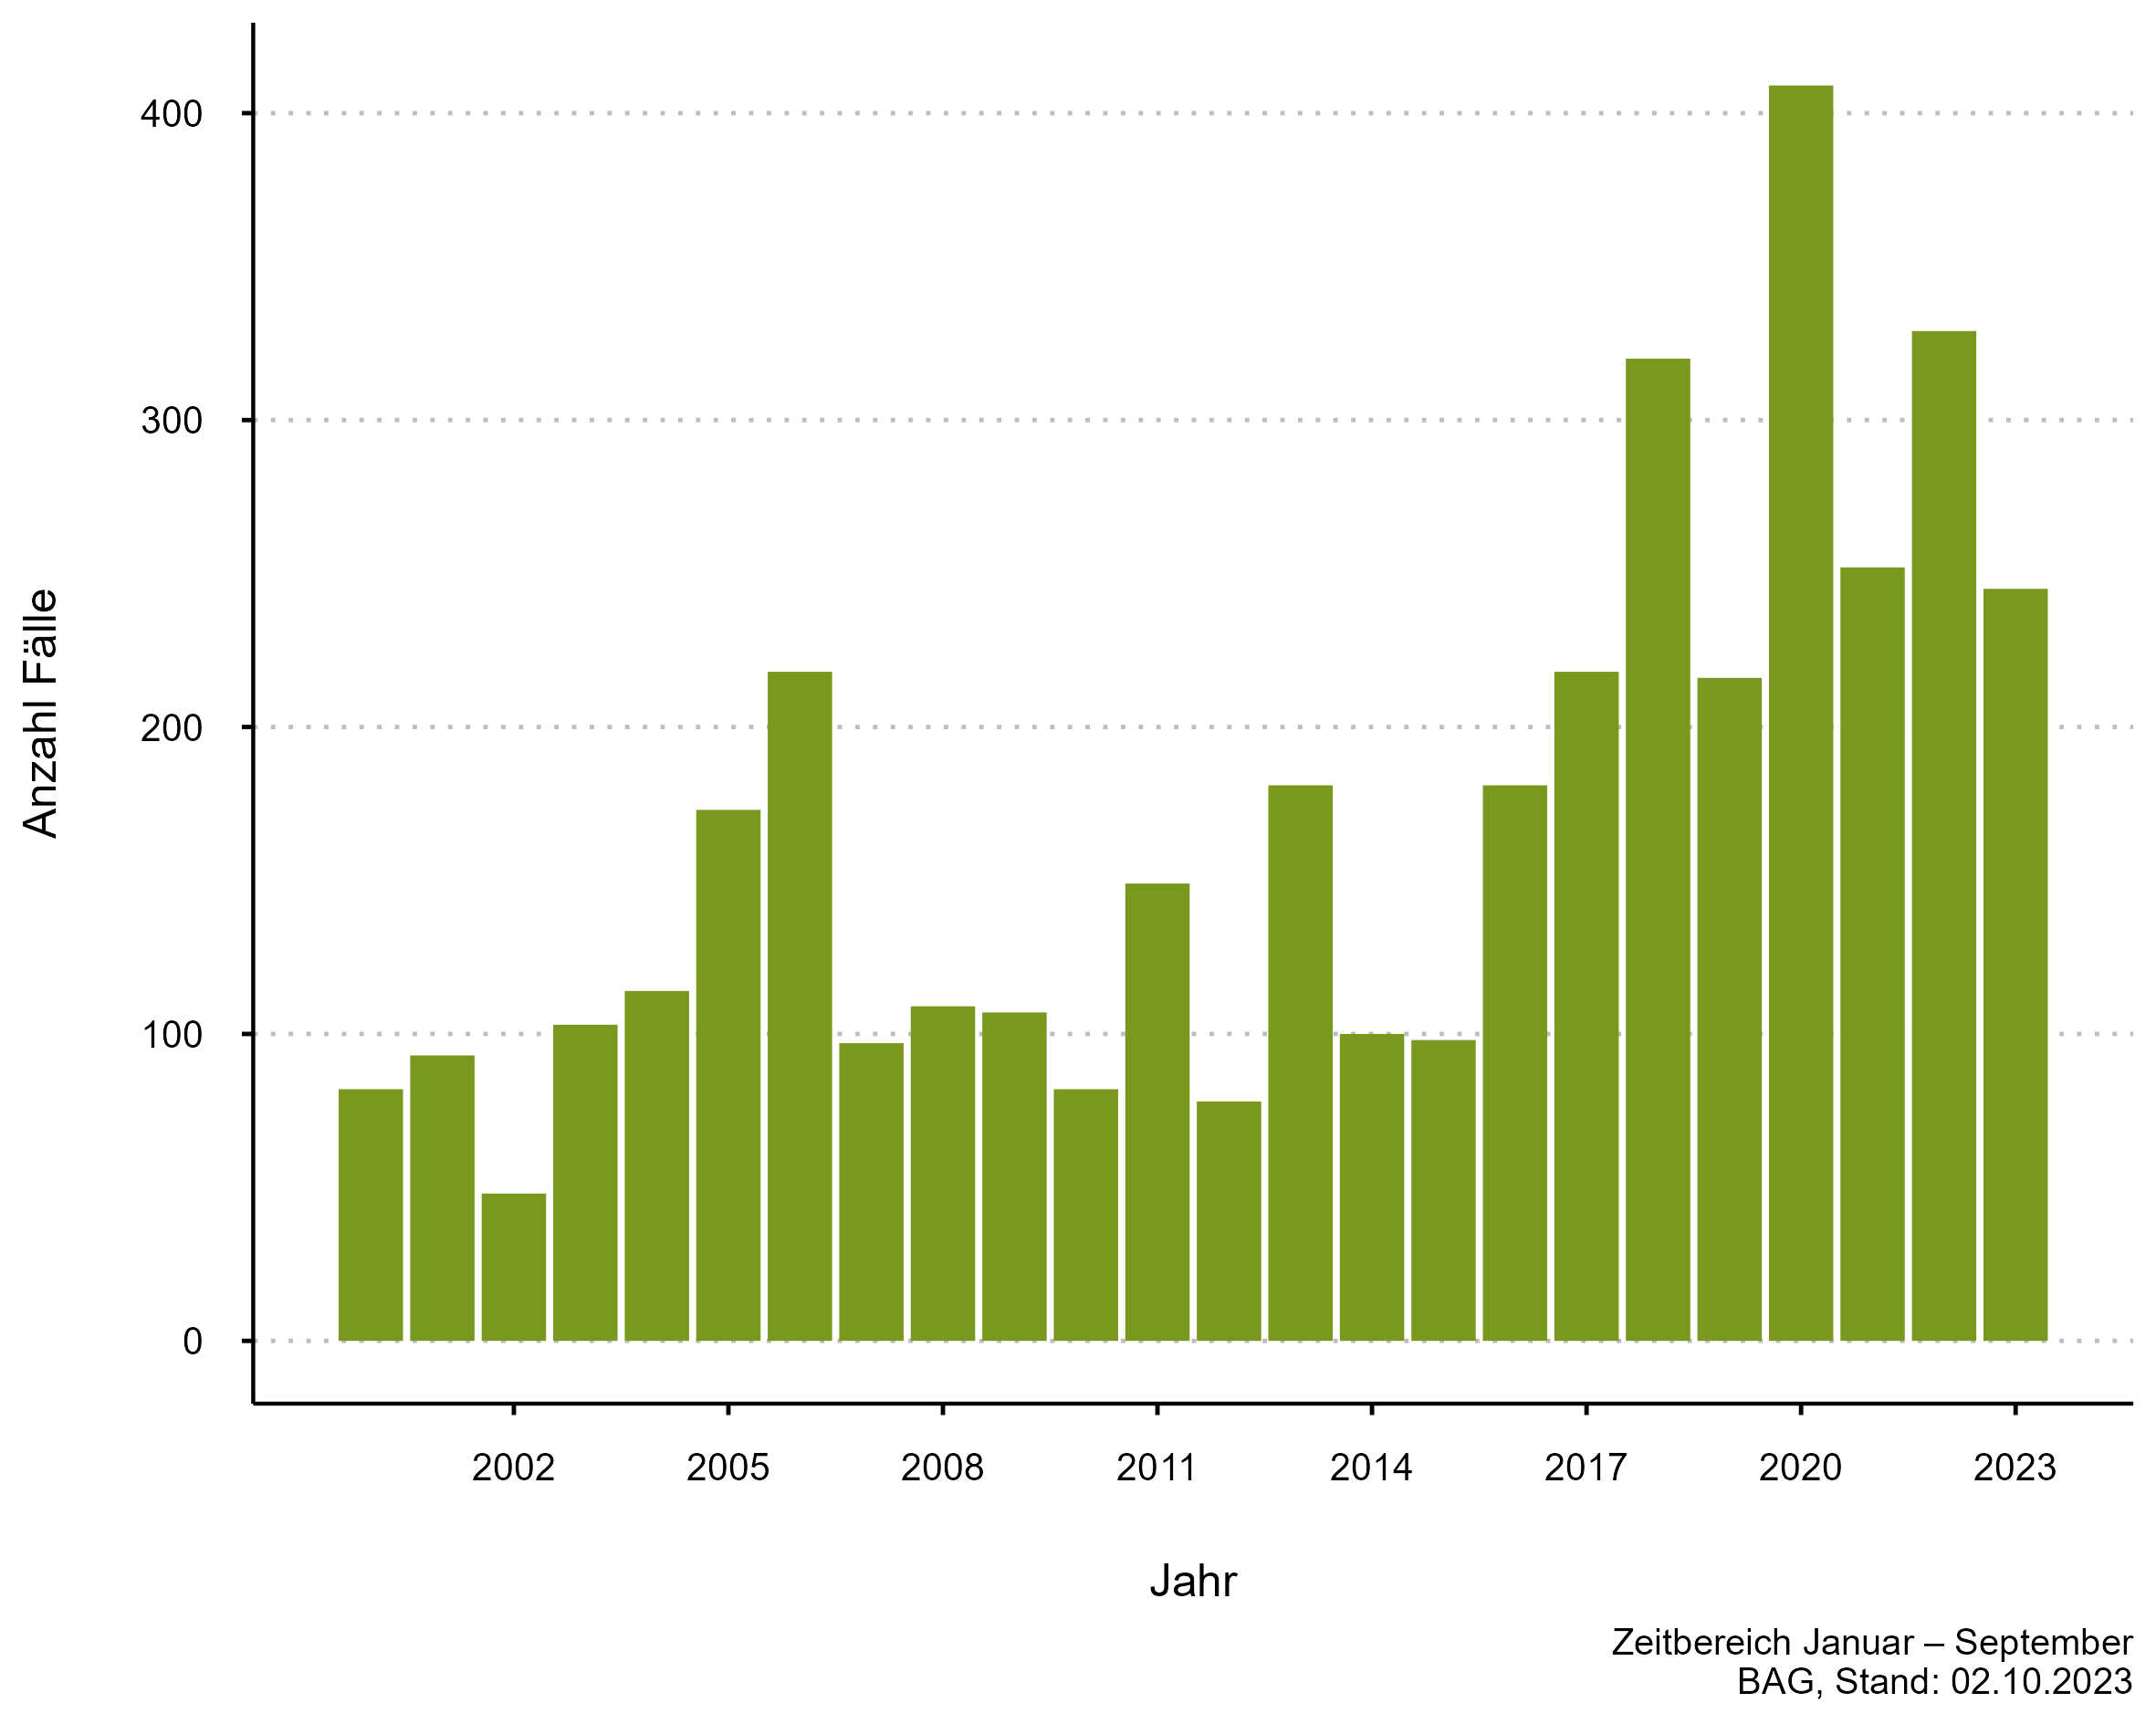 Abbildung 2: FSME-Fallzahlen jeweils kumuliert ab Jahresbeginn bis Ende September, 2000 – 2023 (zugehörige Daten in der Datentabelle Lagebericht Zecken auf dieser Seite)